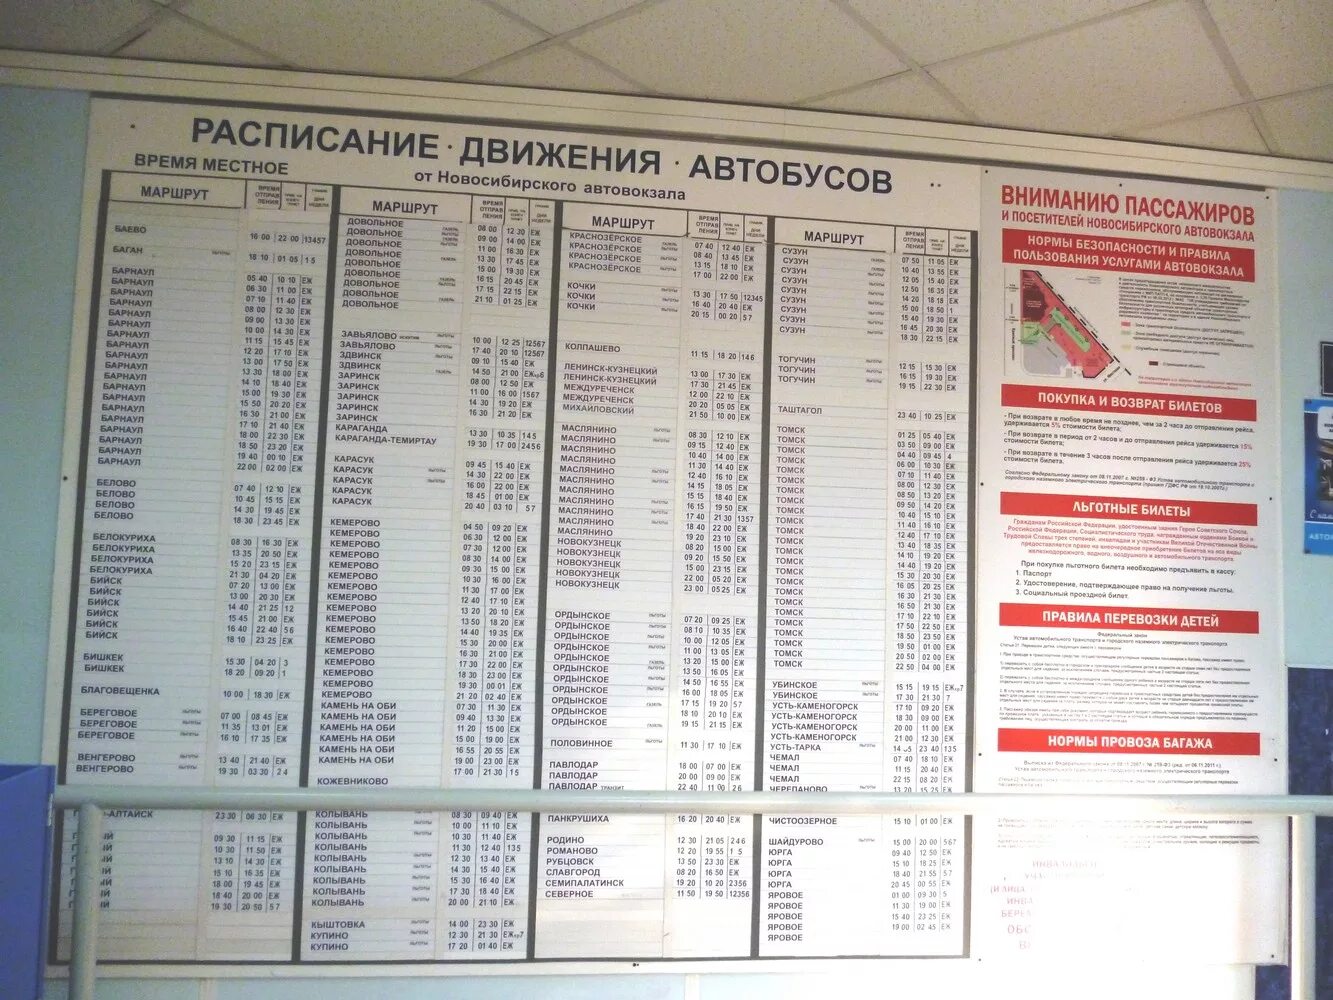 Телефон справочной главного автовокзала. Автовокзал Новосибирск расписание. Расписание Новосибирского автовокзала автобусов. Автовокзал расписание автобусов. Расписание автобусов автовокзал но.